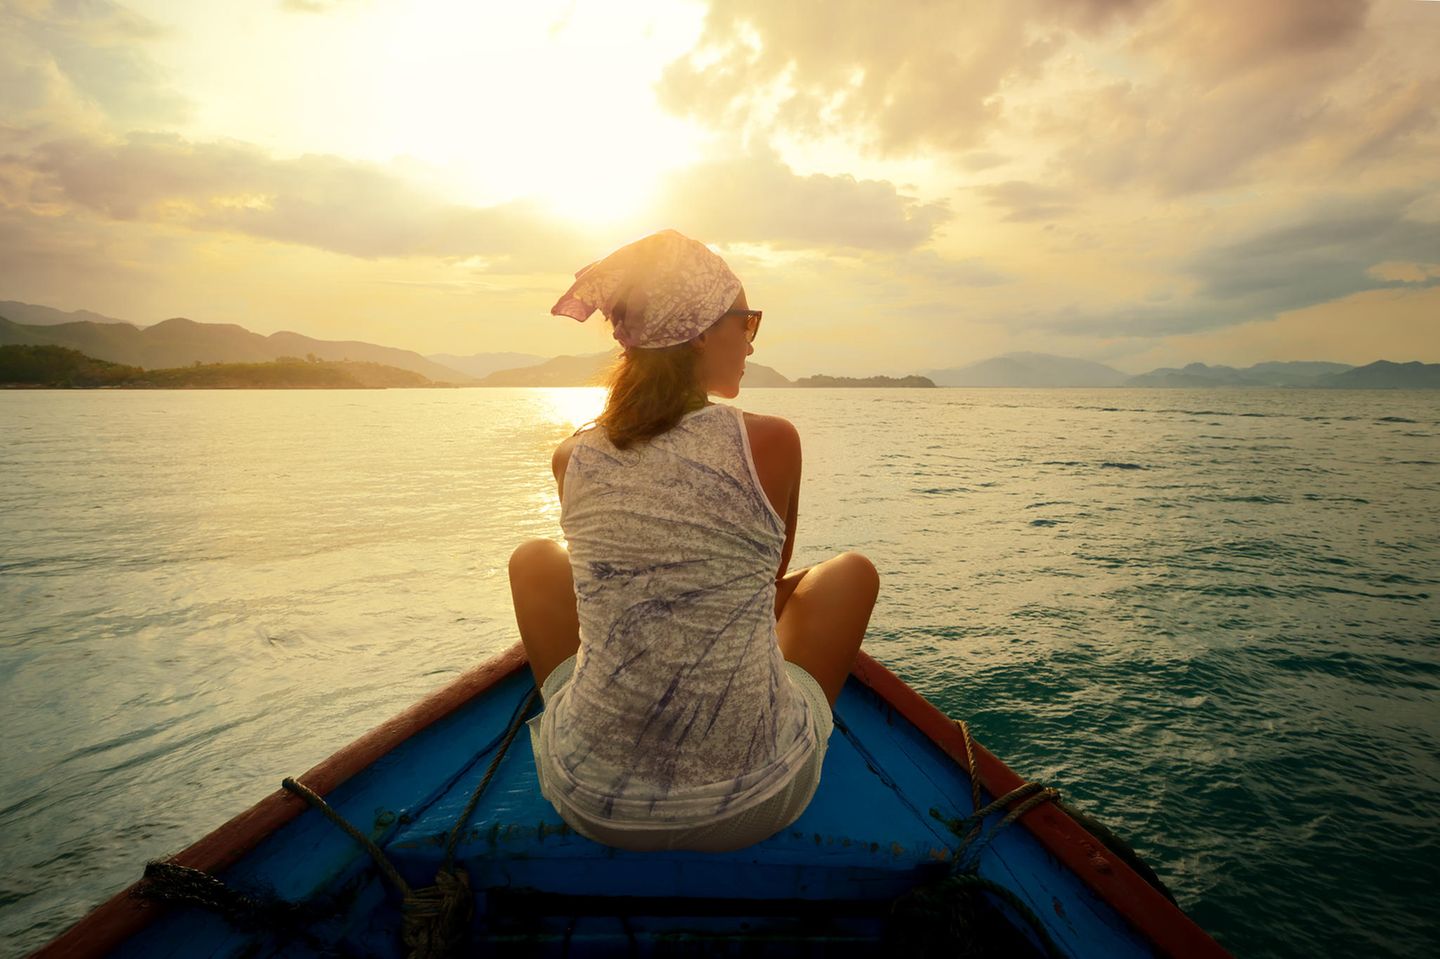 Lebenstraum: Eine junge Frau auf einem kleinen Boot in einem See